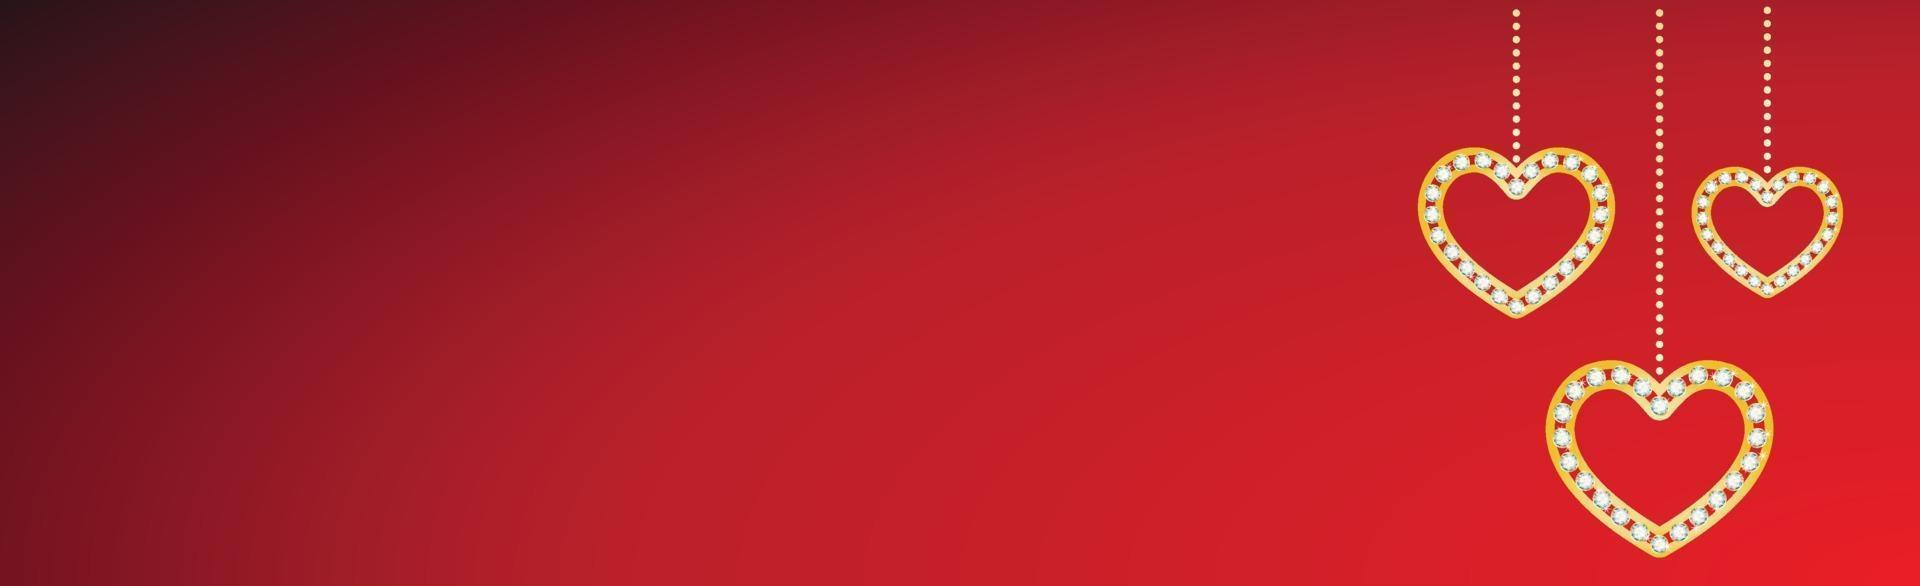 fond rouge bicolore avec des coeurs suspendus vecteur